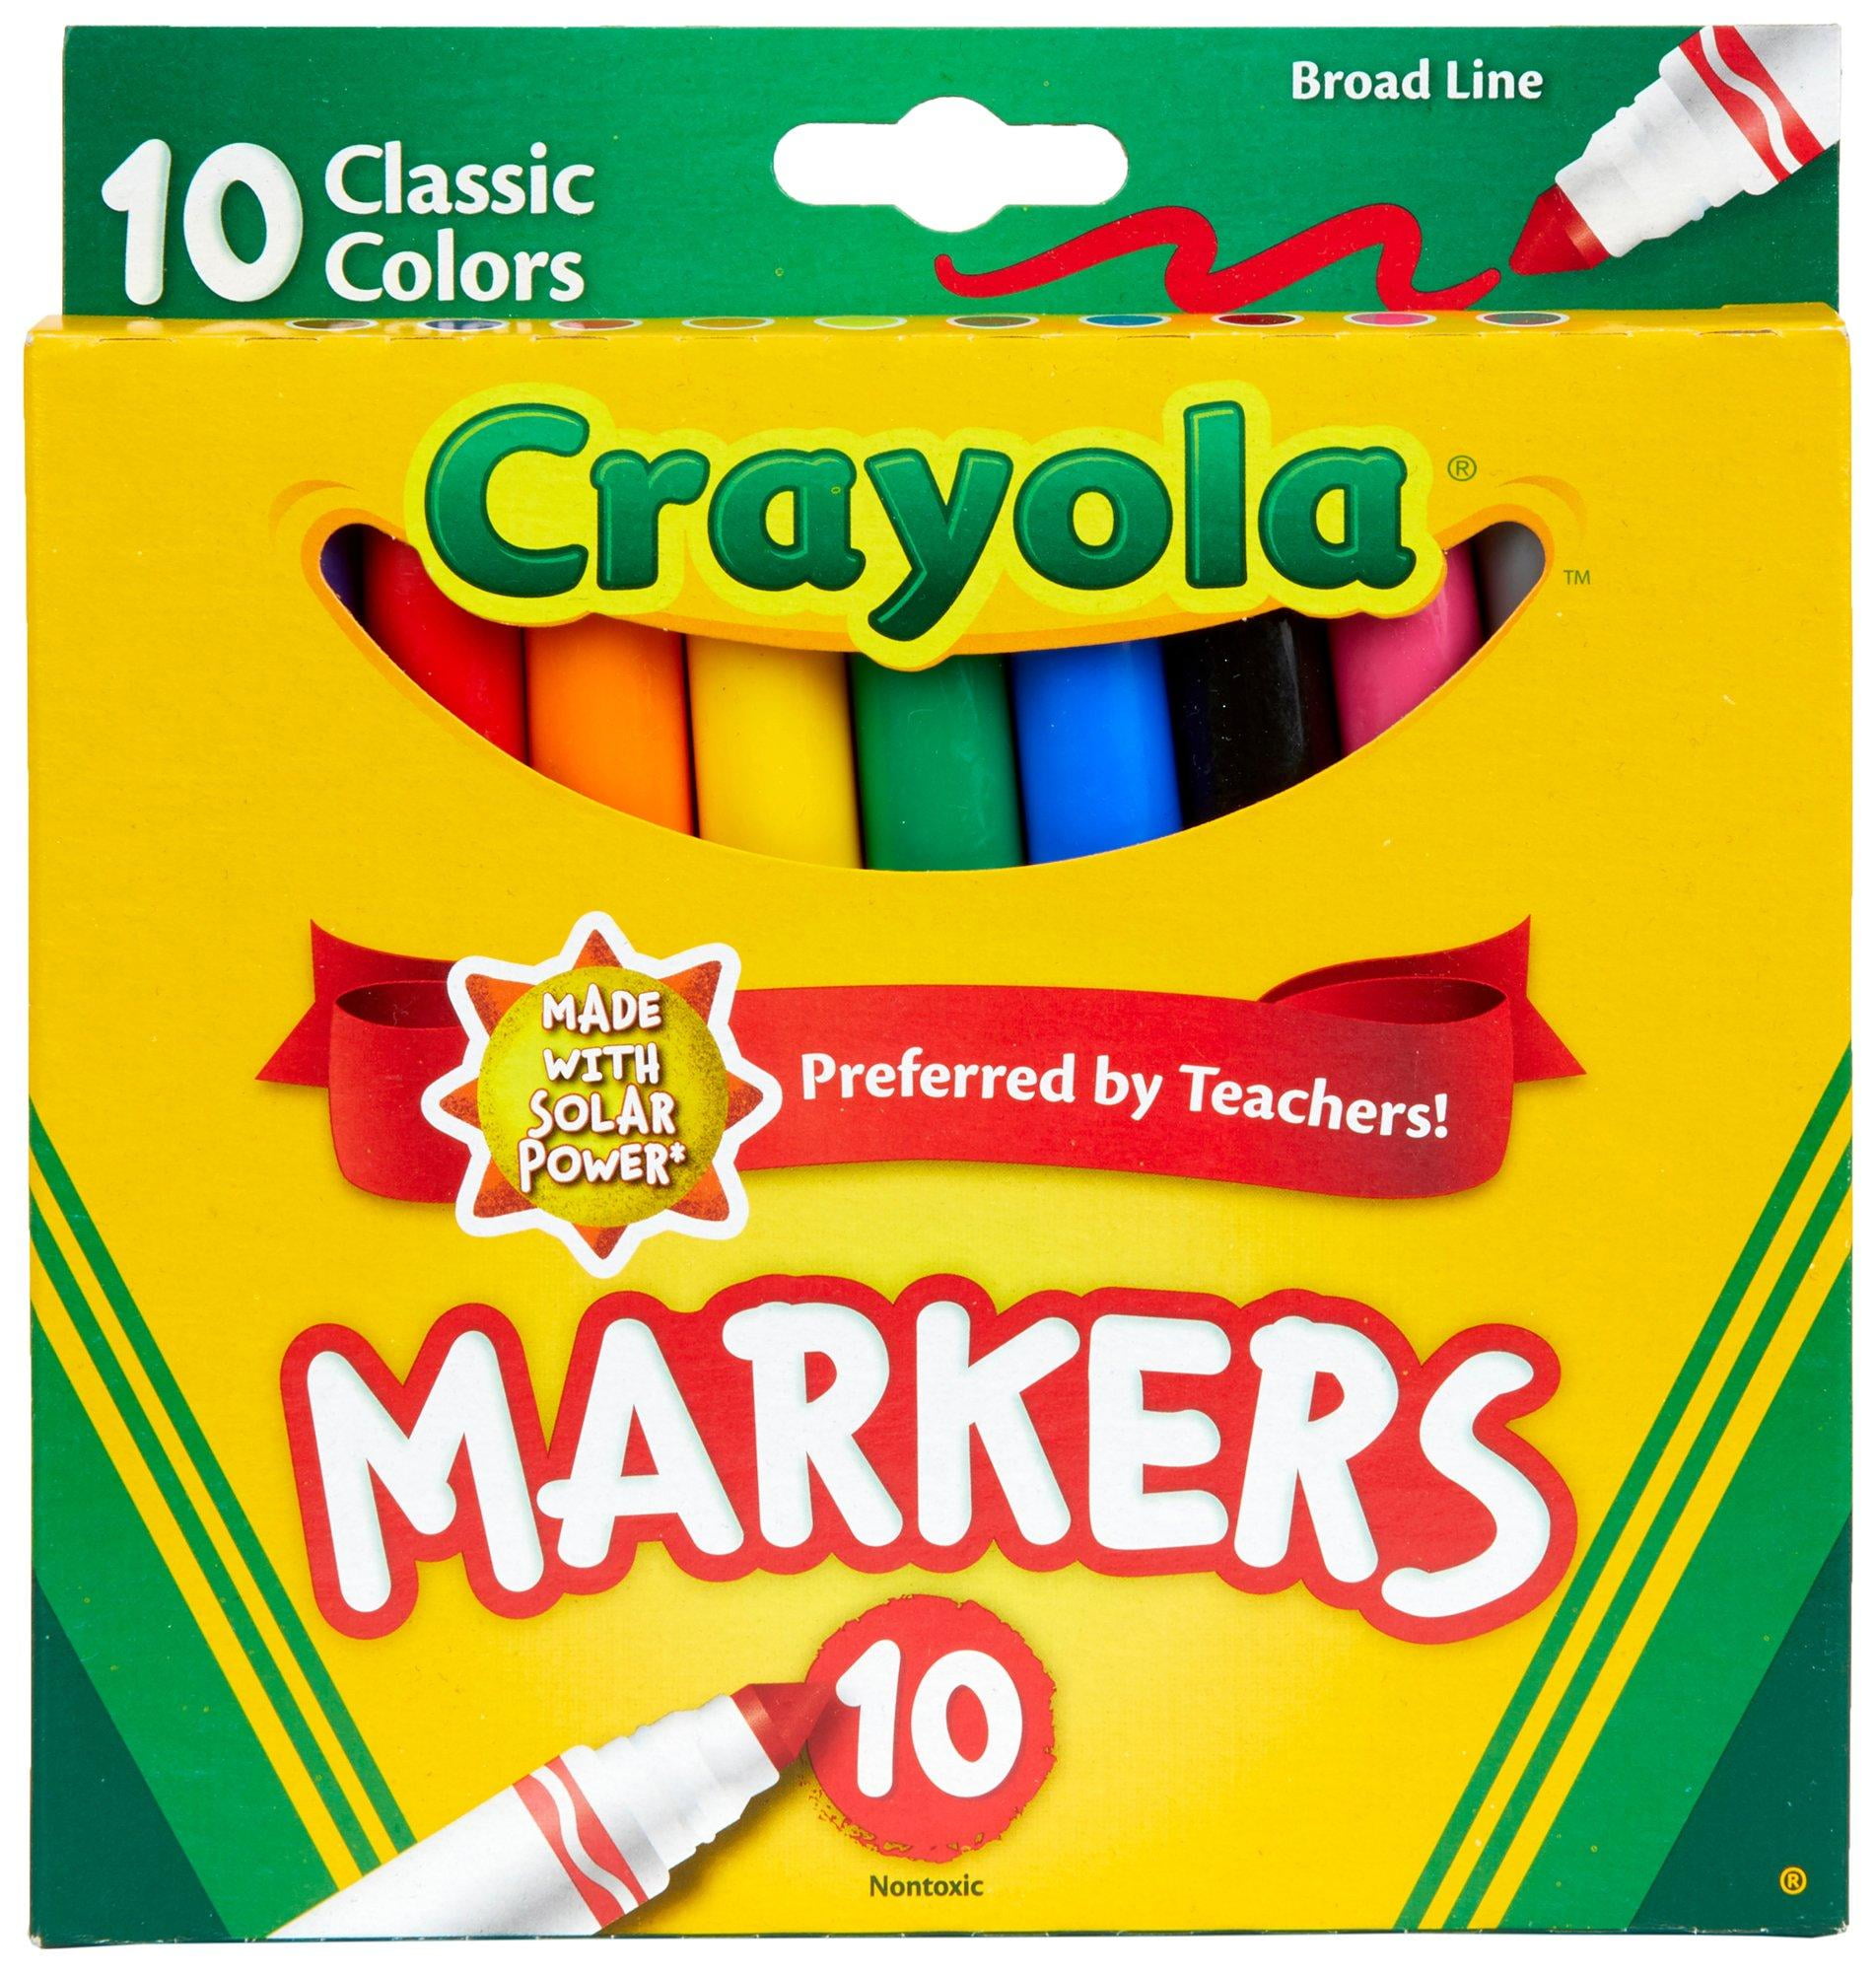 Crayola® Fine Line Markers, Assorted Classic Classpack®, Pack Of 10 - Zerbee